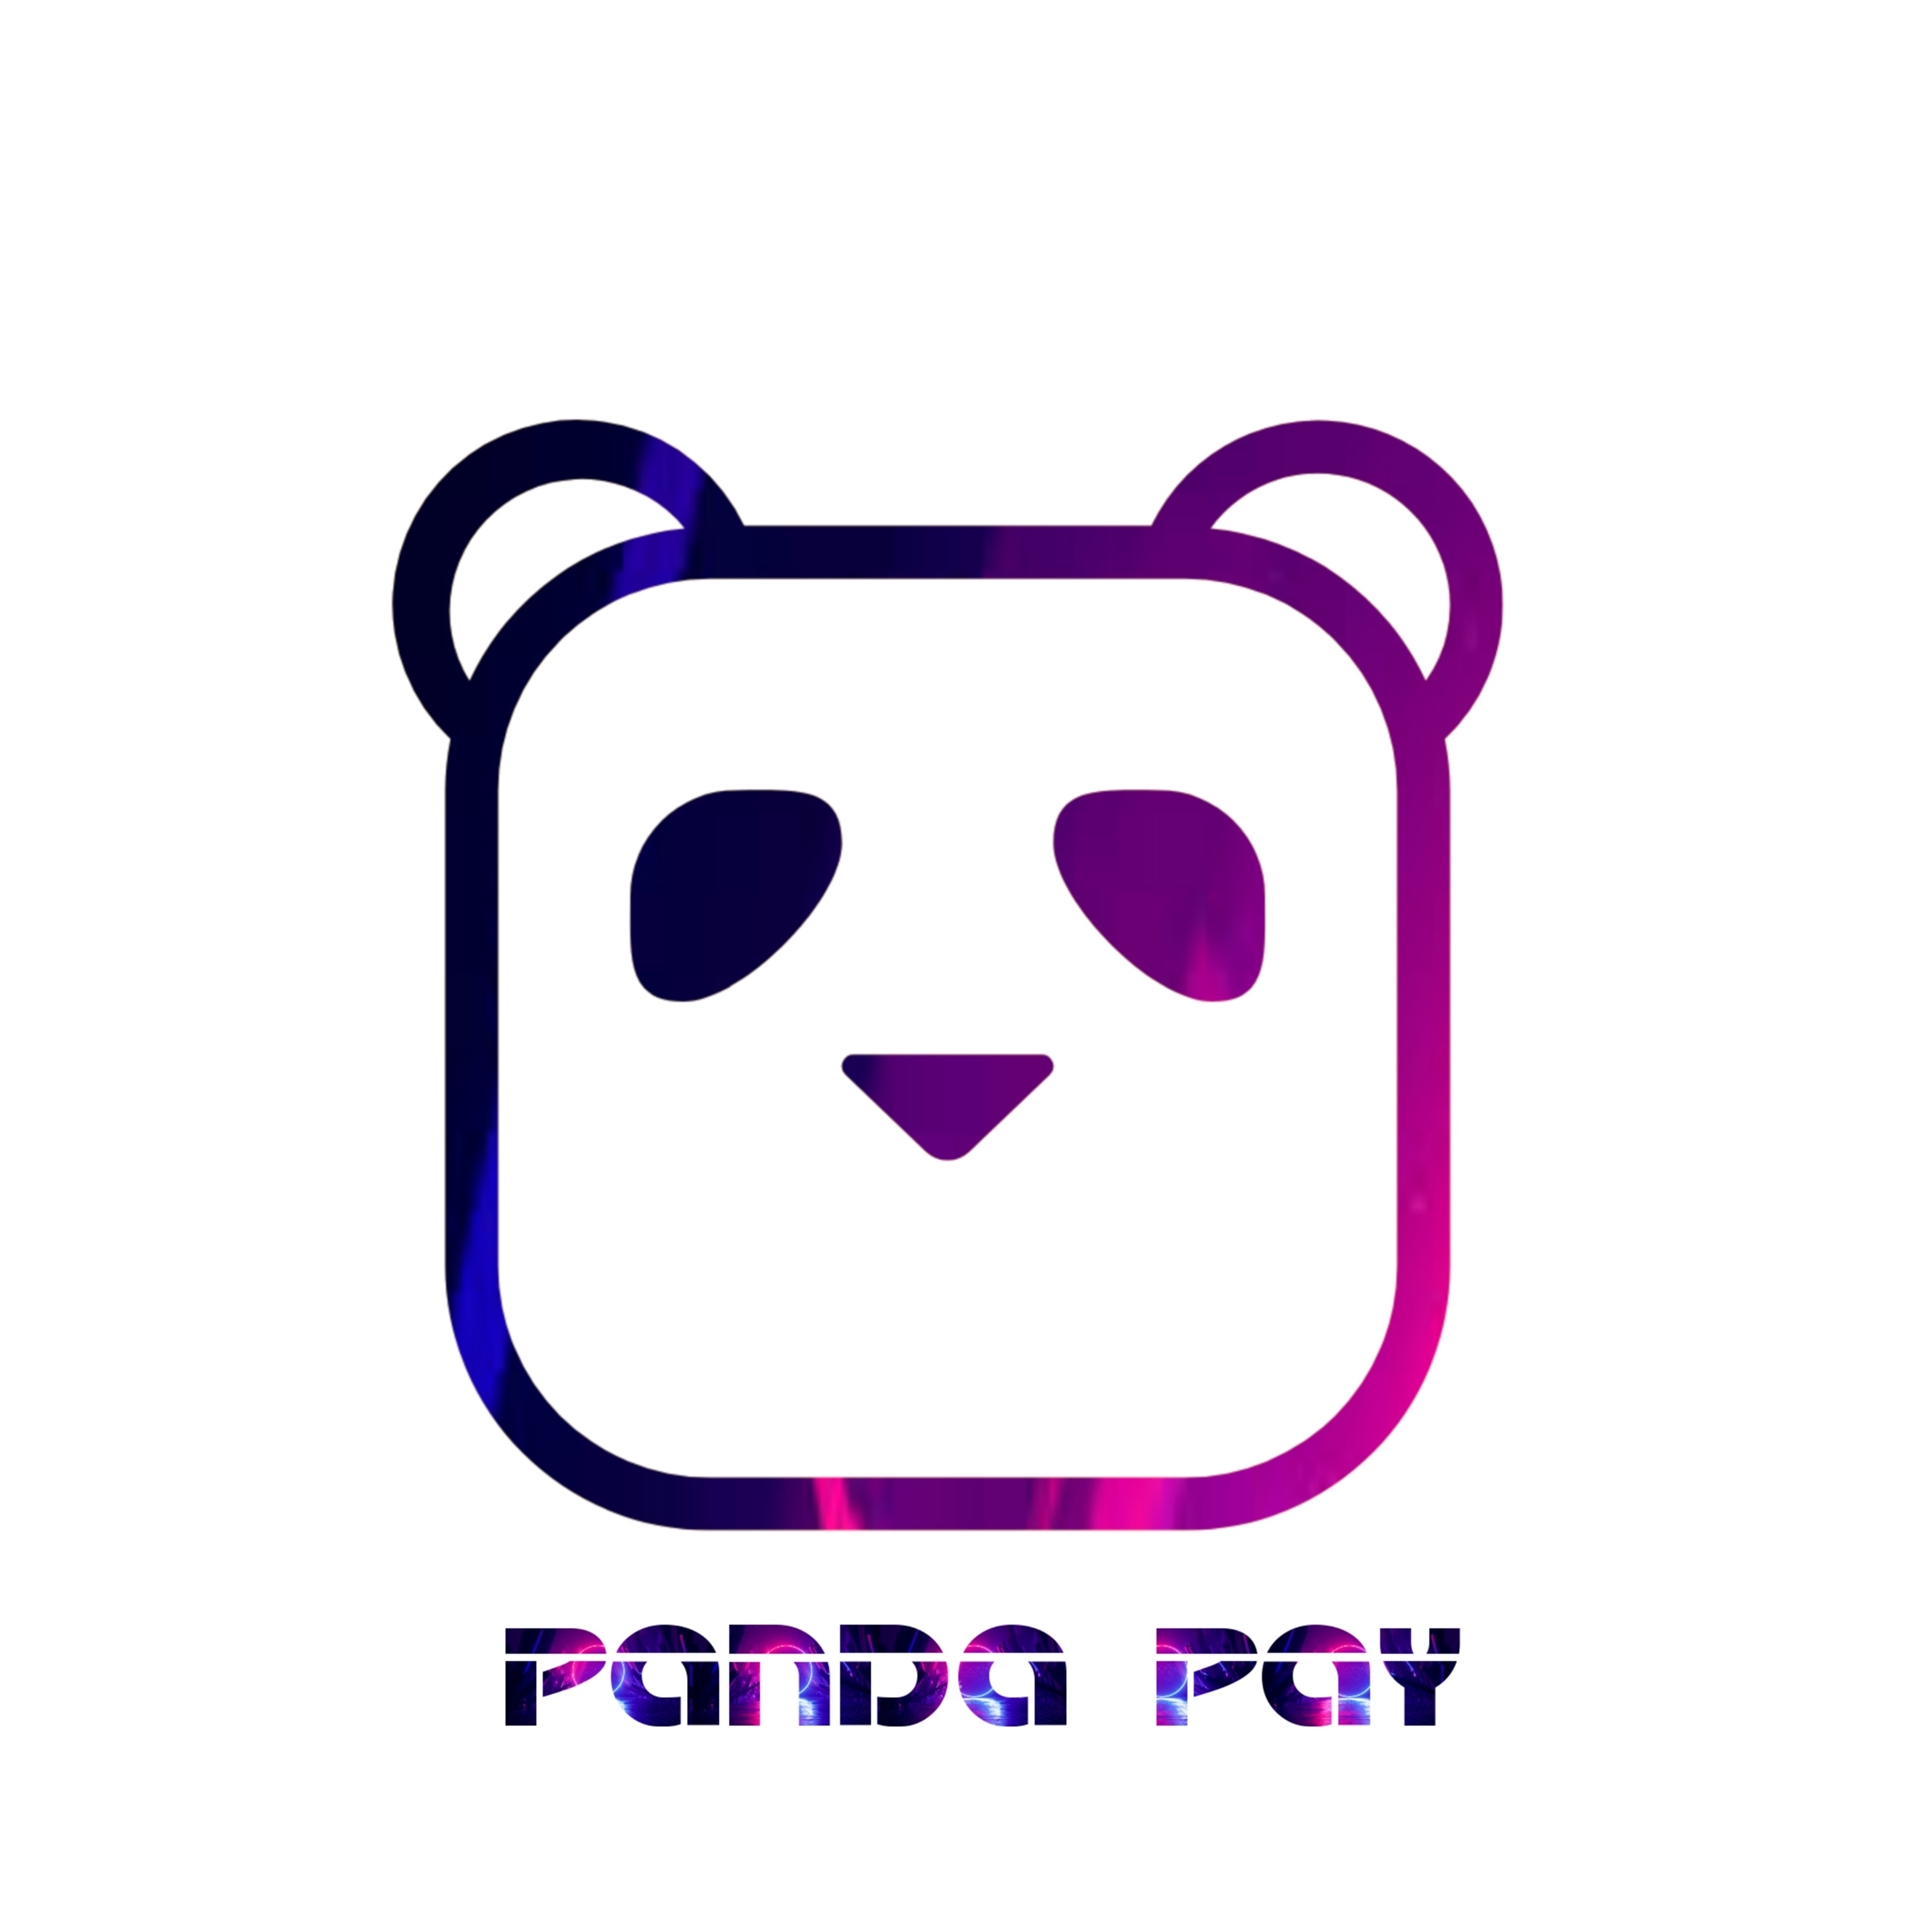 Panda pay logo